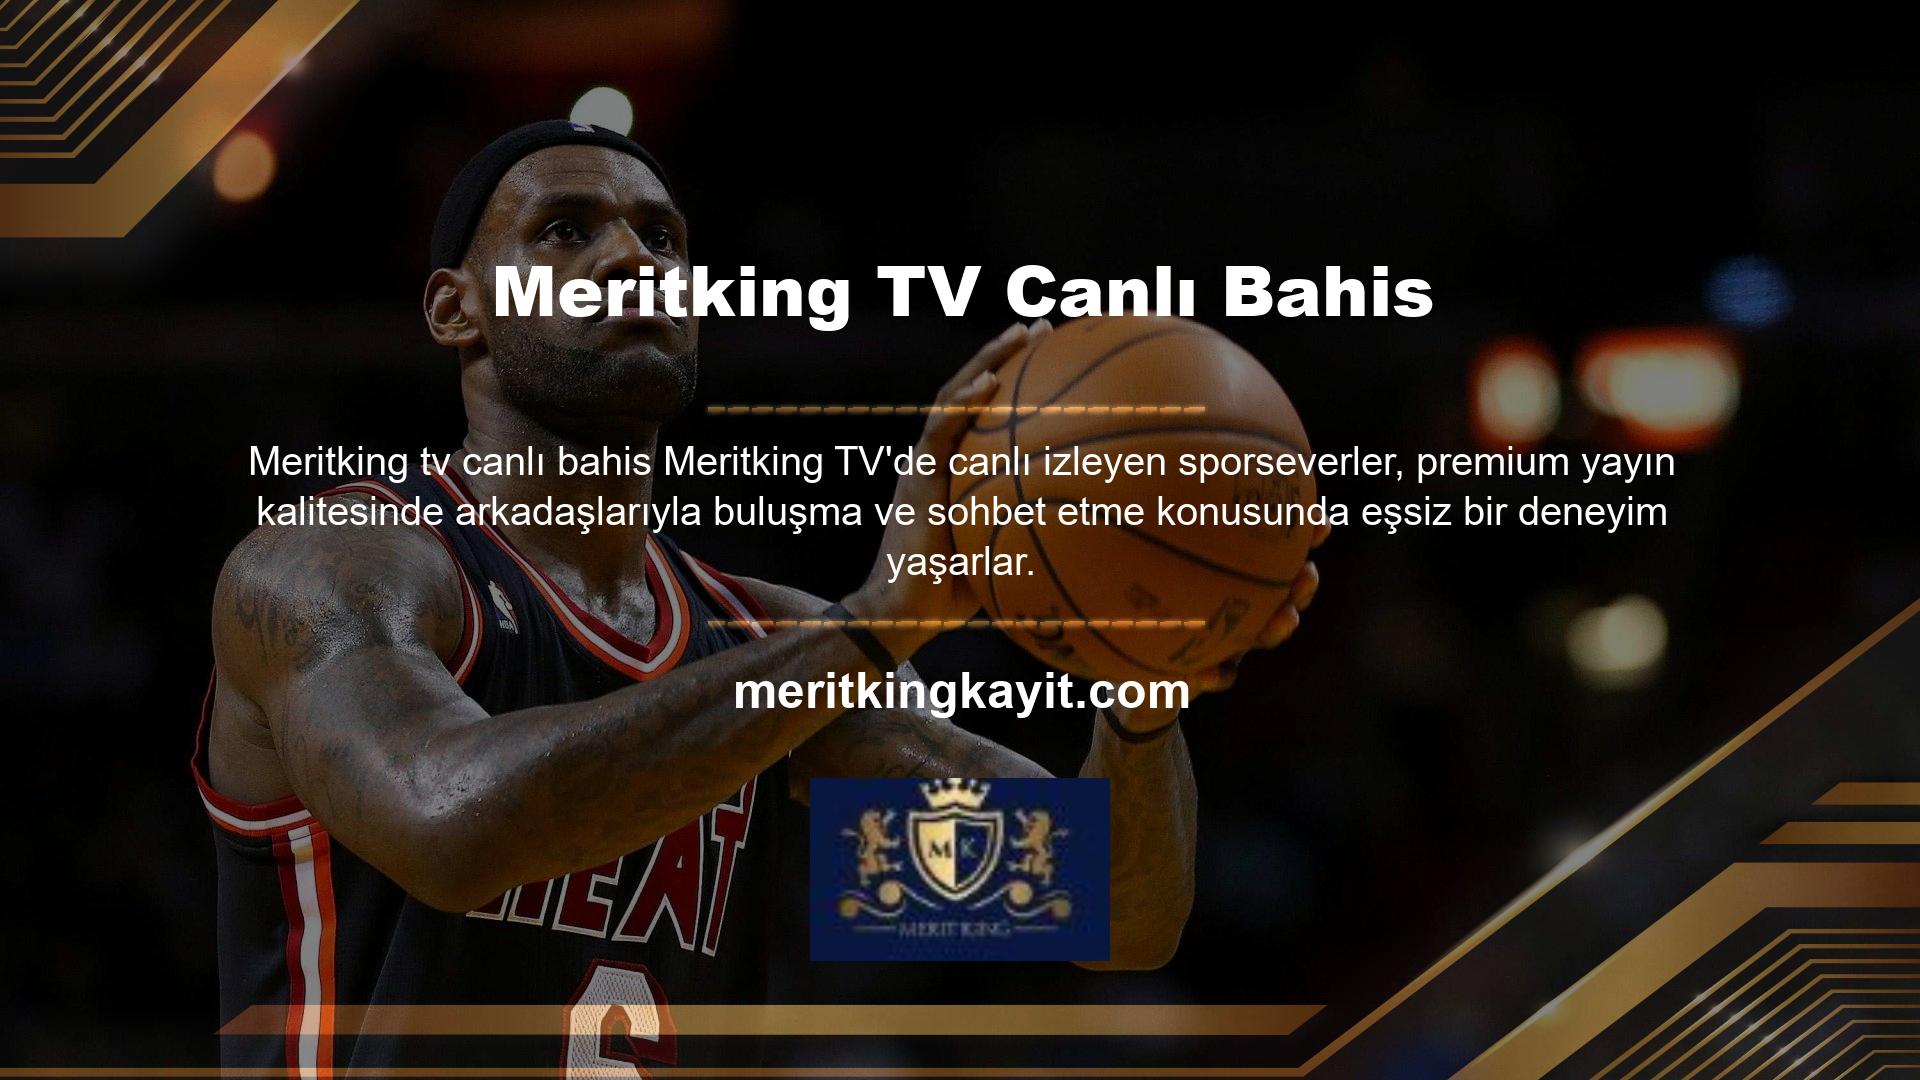 Ancak bu özel bahis platformu, Meritking TV canlı bahis hariç tüm maçları ücretsiz izlemenize olanak sağlar